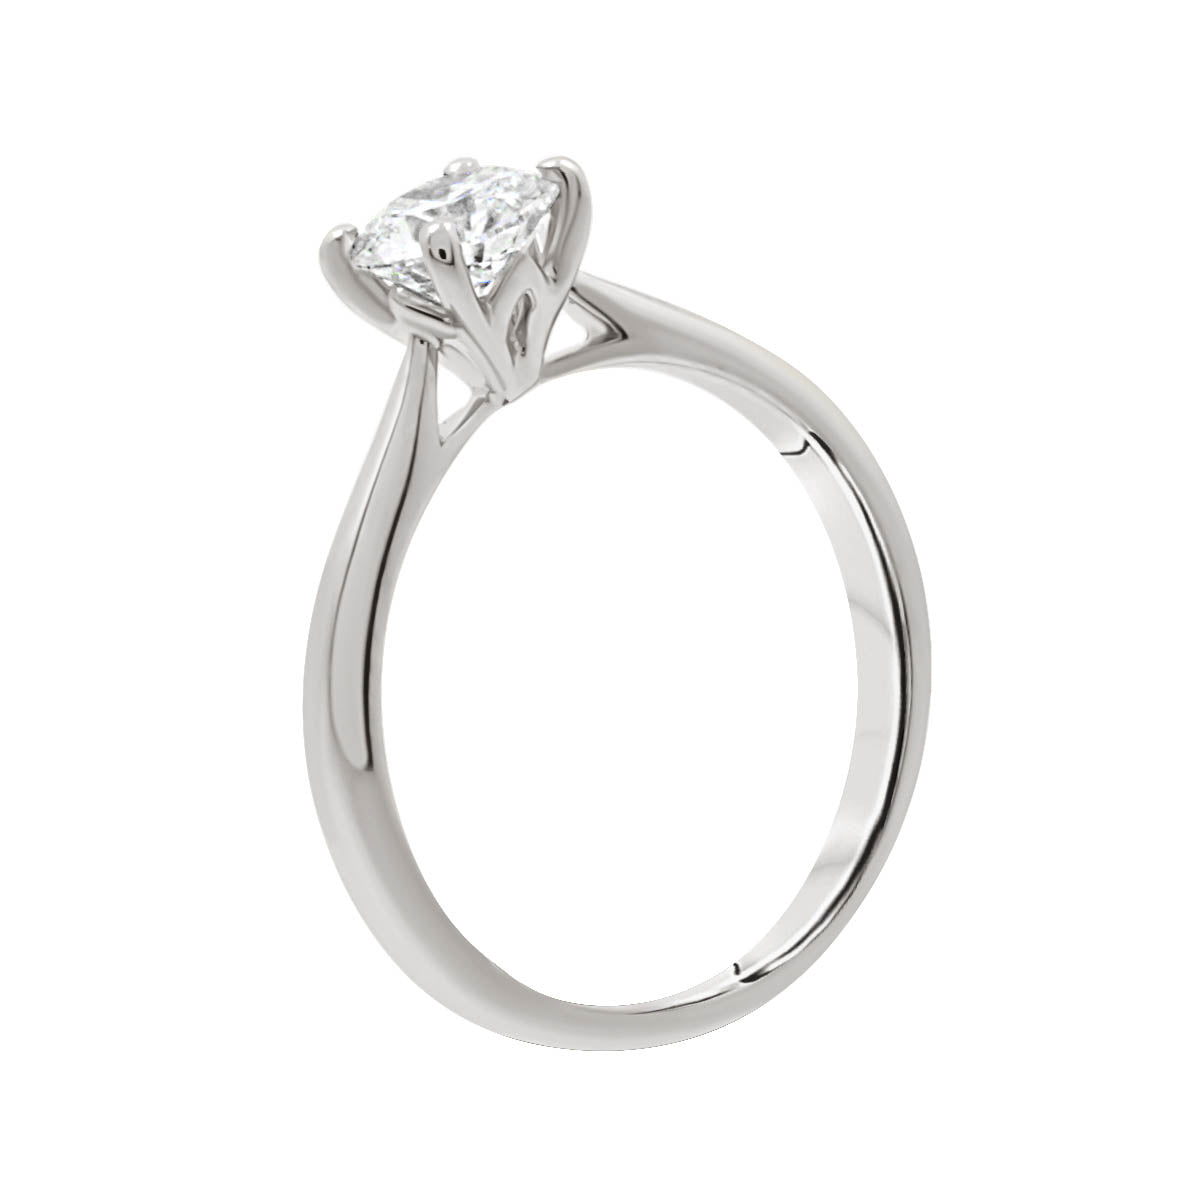 Hidden Diamond Detail engagement ring in 18kt white goldHidden Diamond Detail engagement ring in 18kt white gold